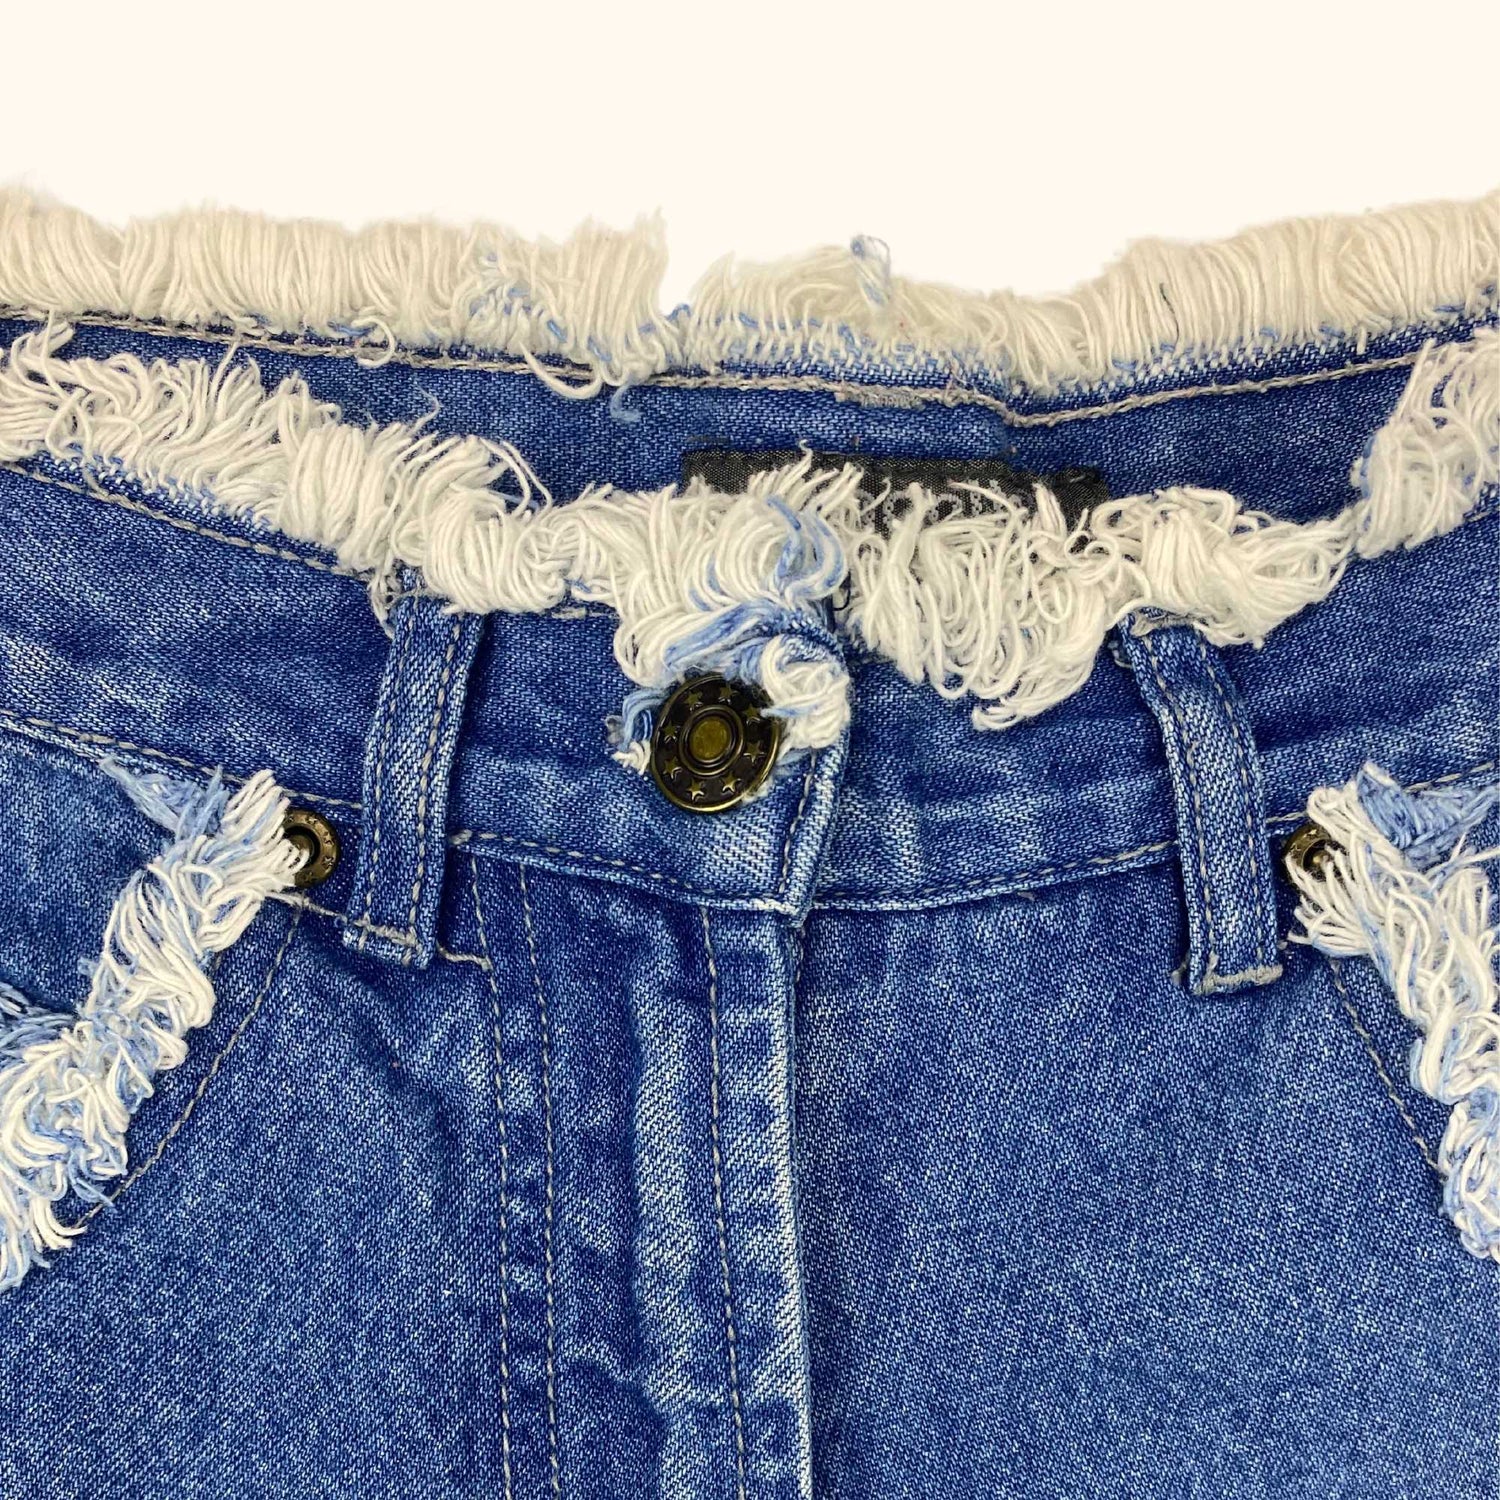 High Waisted Blue Denim Frayed Shorts - Size Small - Emonite Classic - Shorts